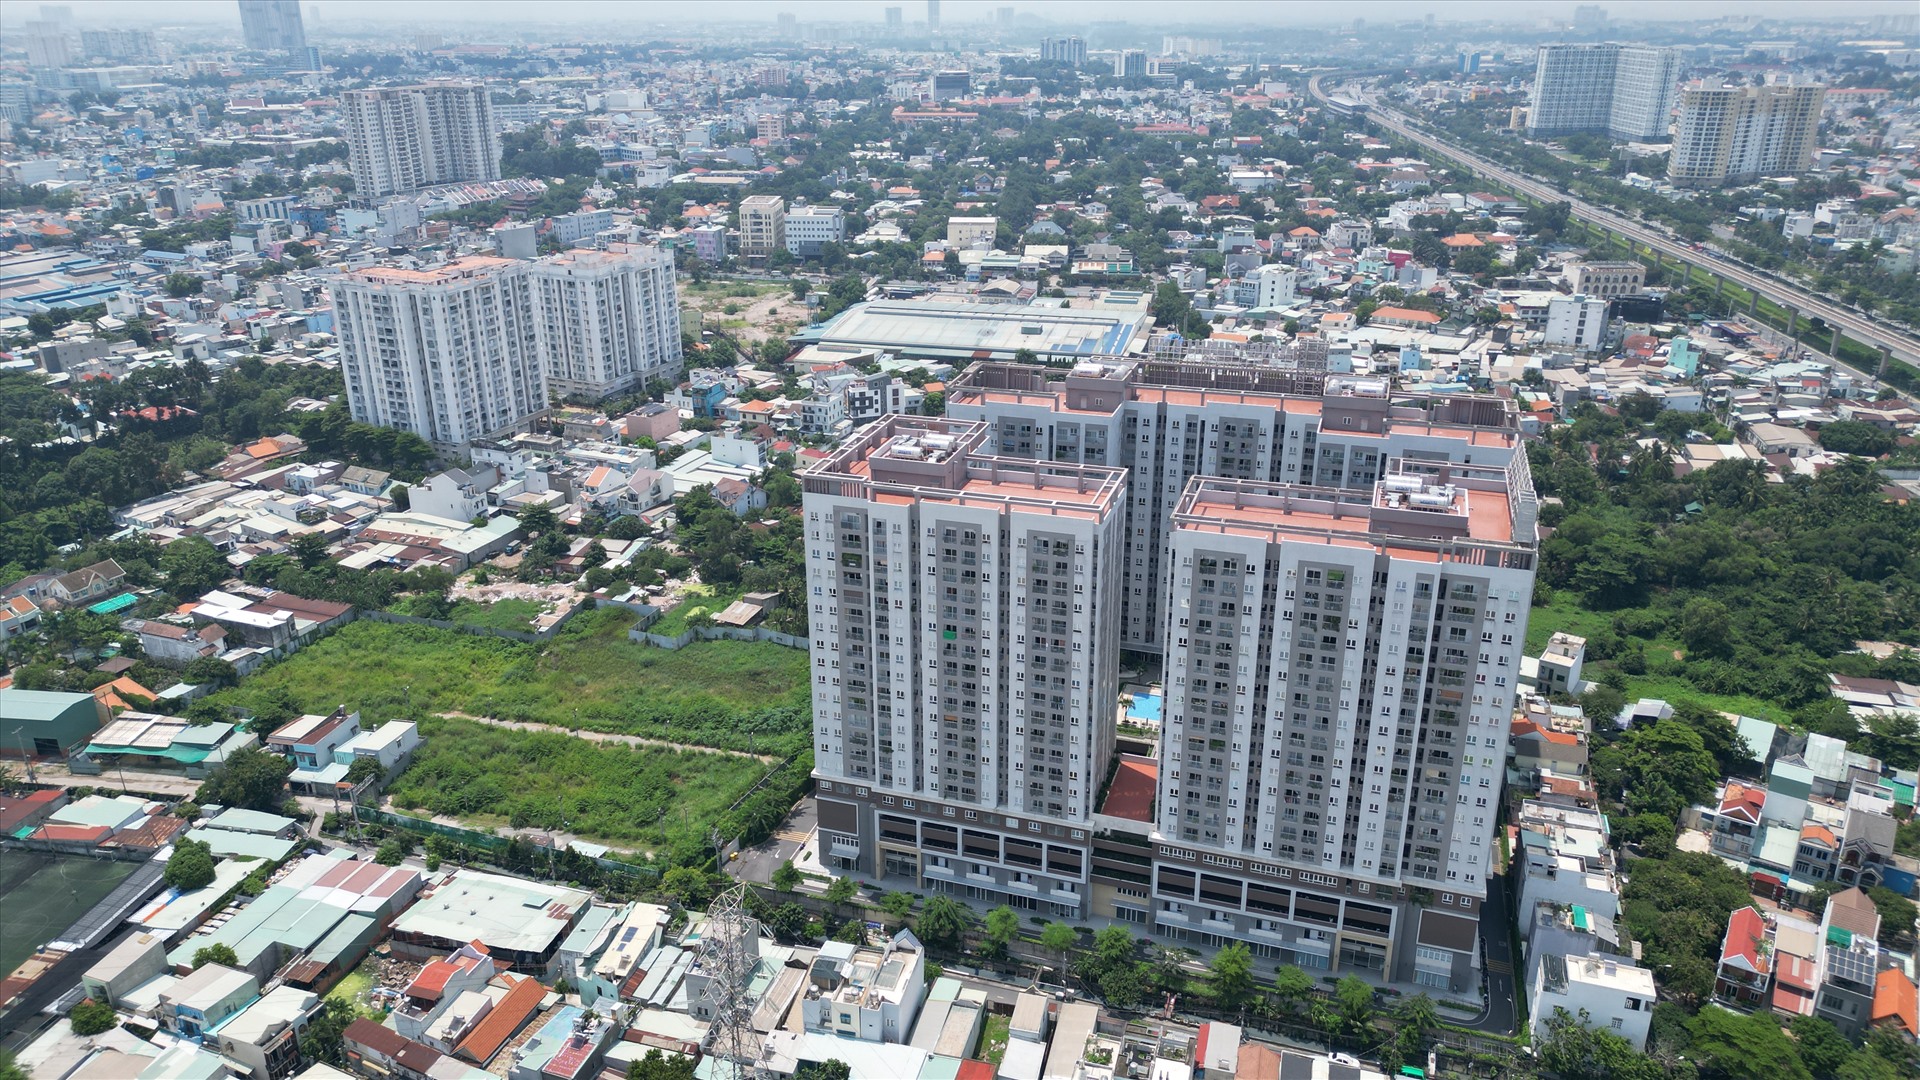 Đoạn nút giao Bình Thái (trên xa lộ Hà Nội) đến đường Phạm Văn Đồng dài 2,5 km tuy chưa triển khai xây dựng nhưng đã có hàng nghìn căn hộ chung cư vây quanh.